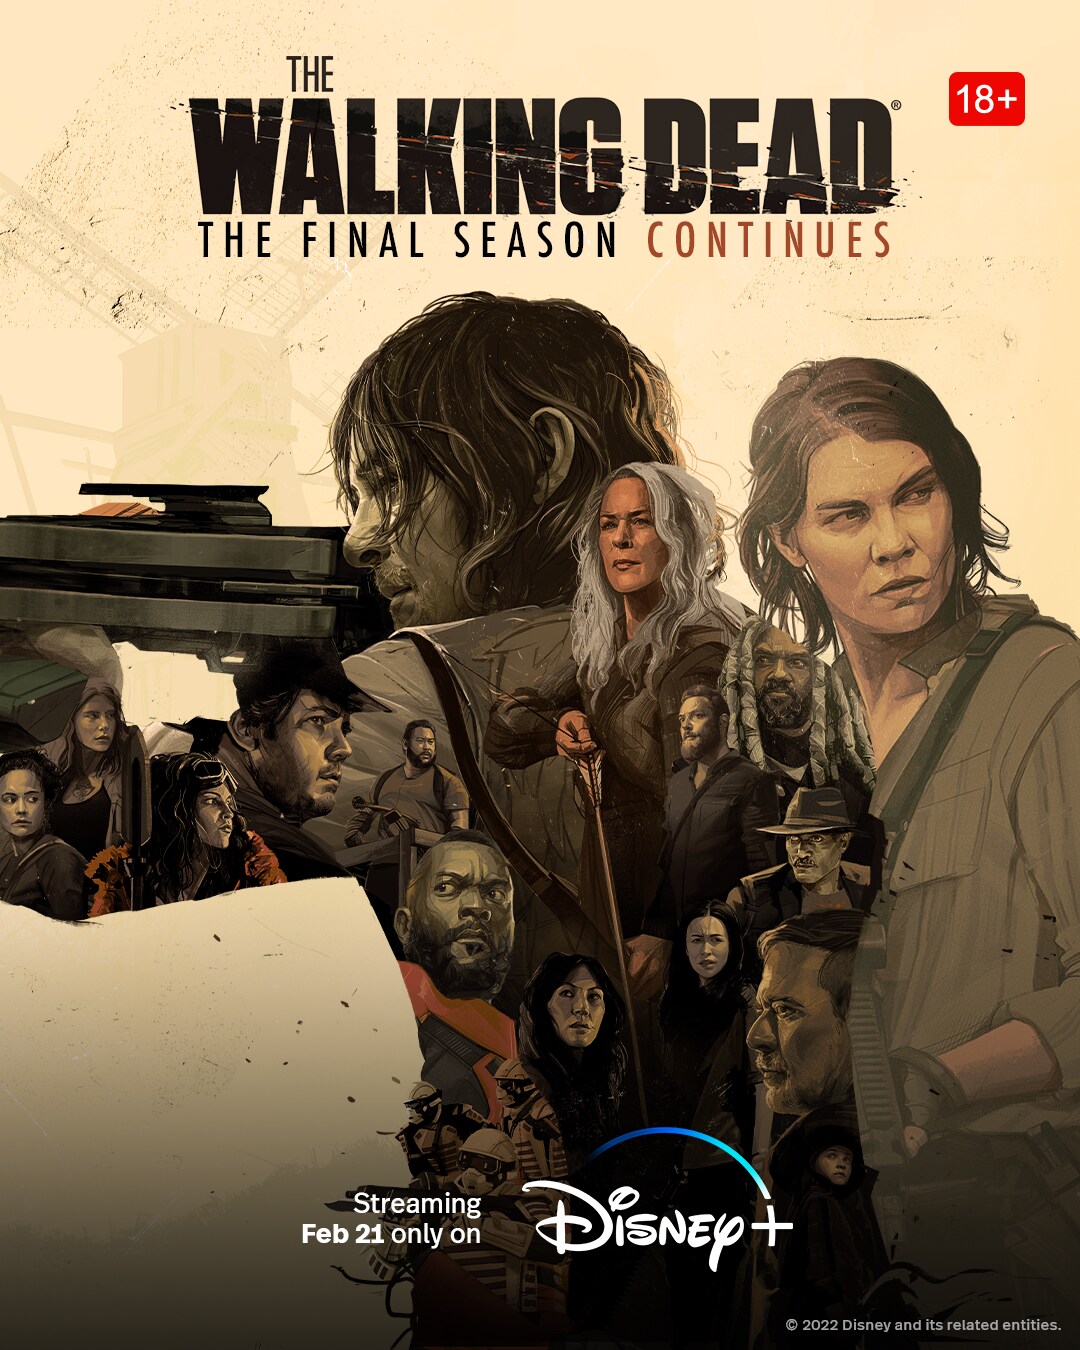 The Walking Dead S11B Key Art